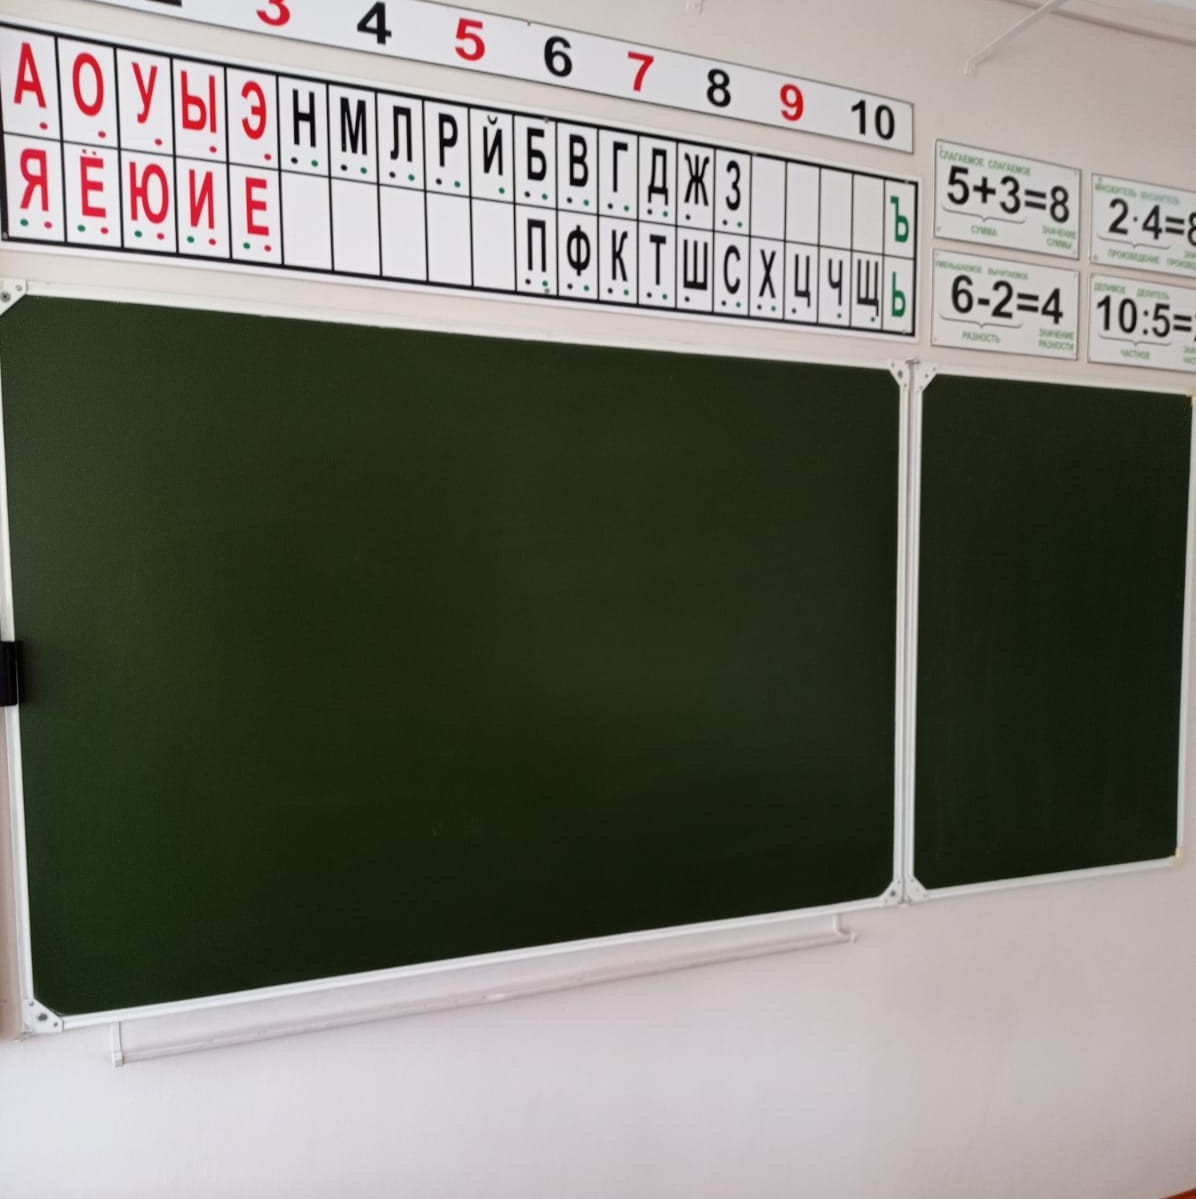 Продленку хотят вернуть во все российские школы